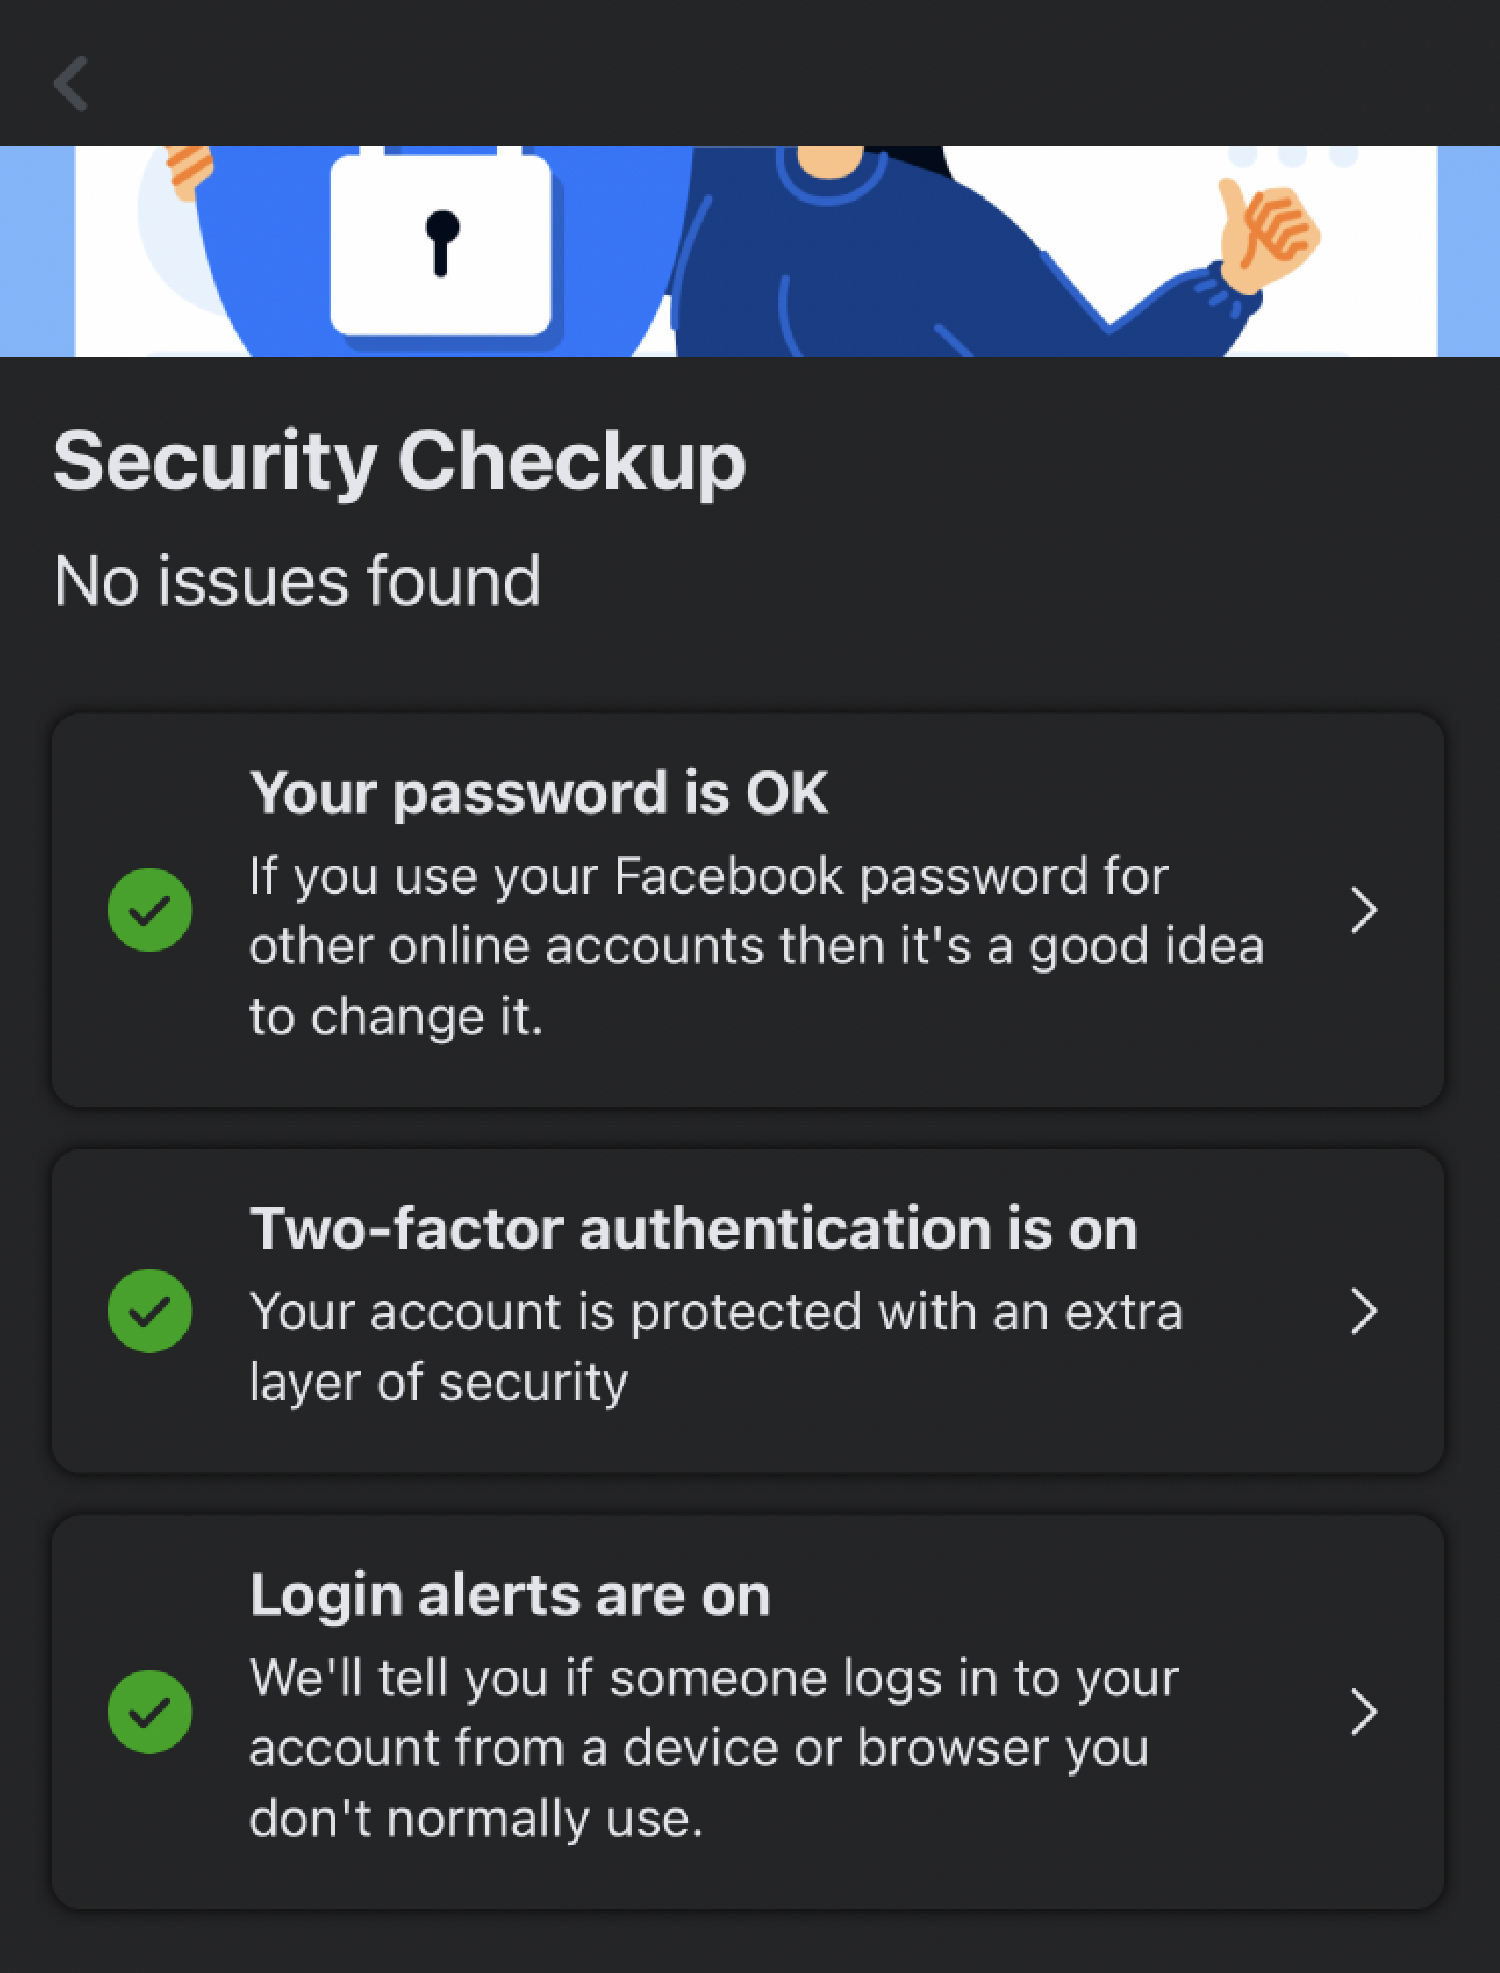 Verifica estas tres configuraciones en tu Verificación de seguridad de Facebook